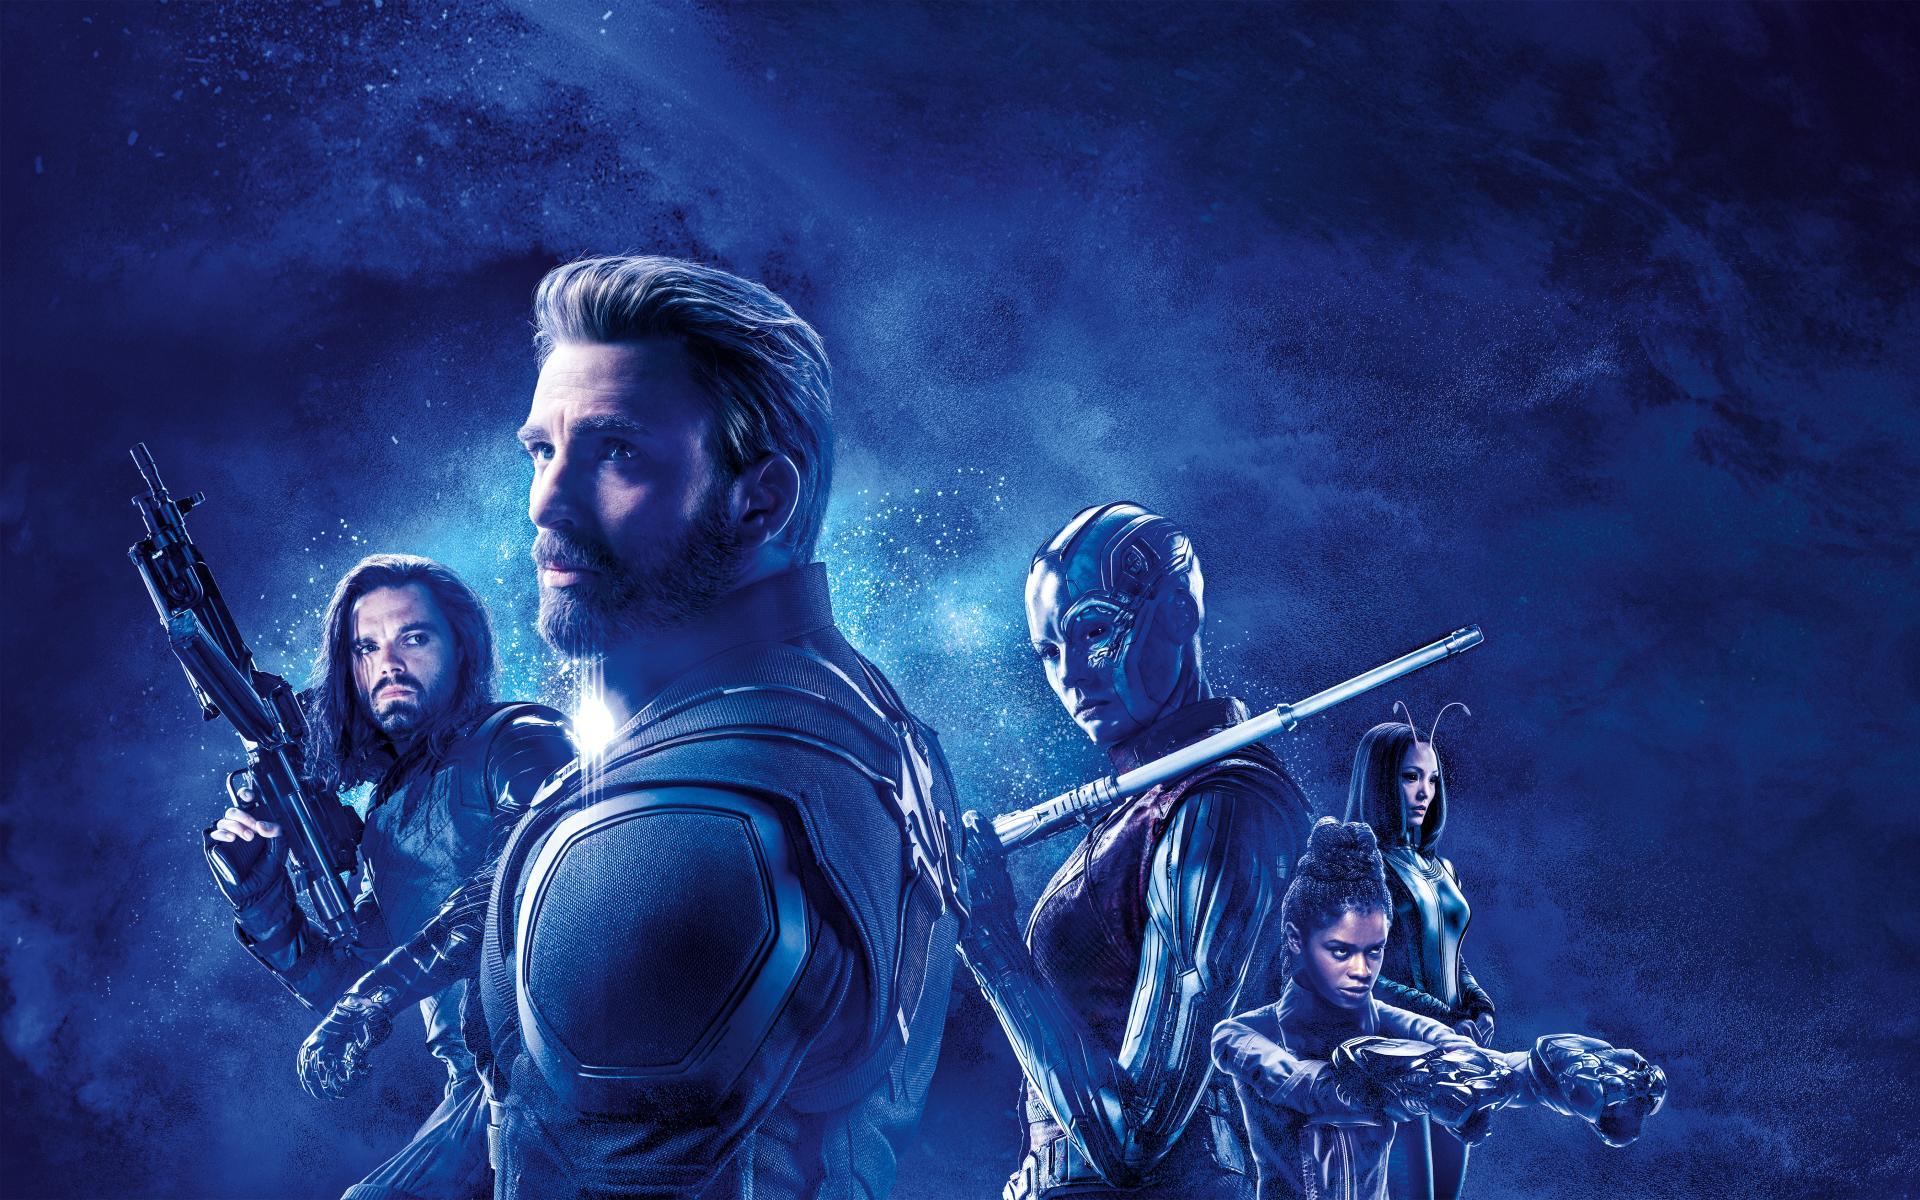 Avengers Endgame Wallpaper. HD Background Image